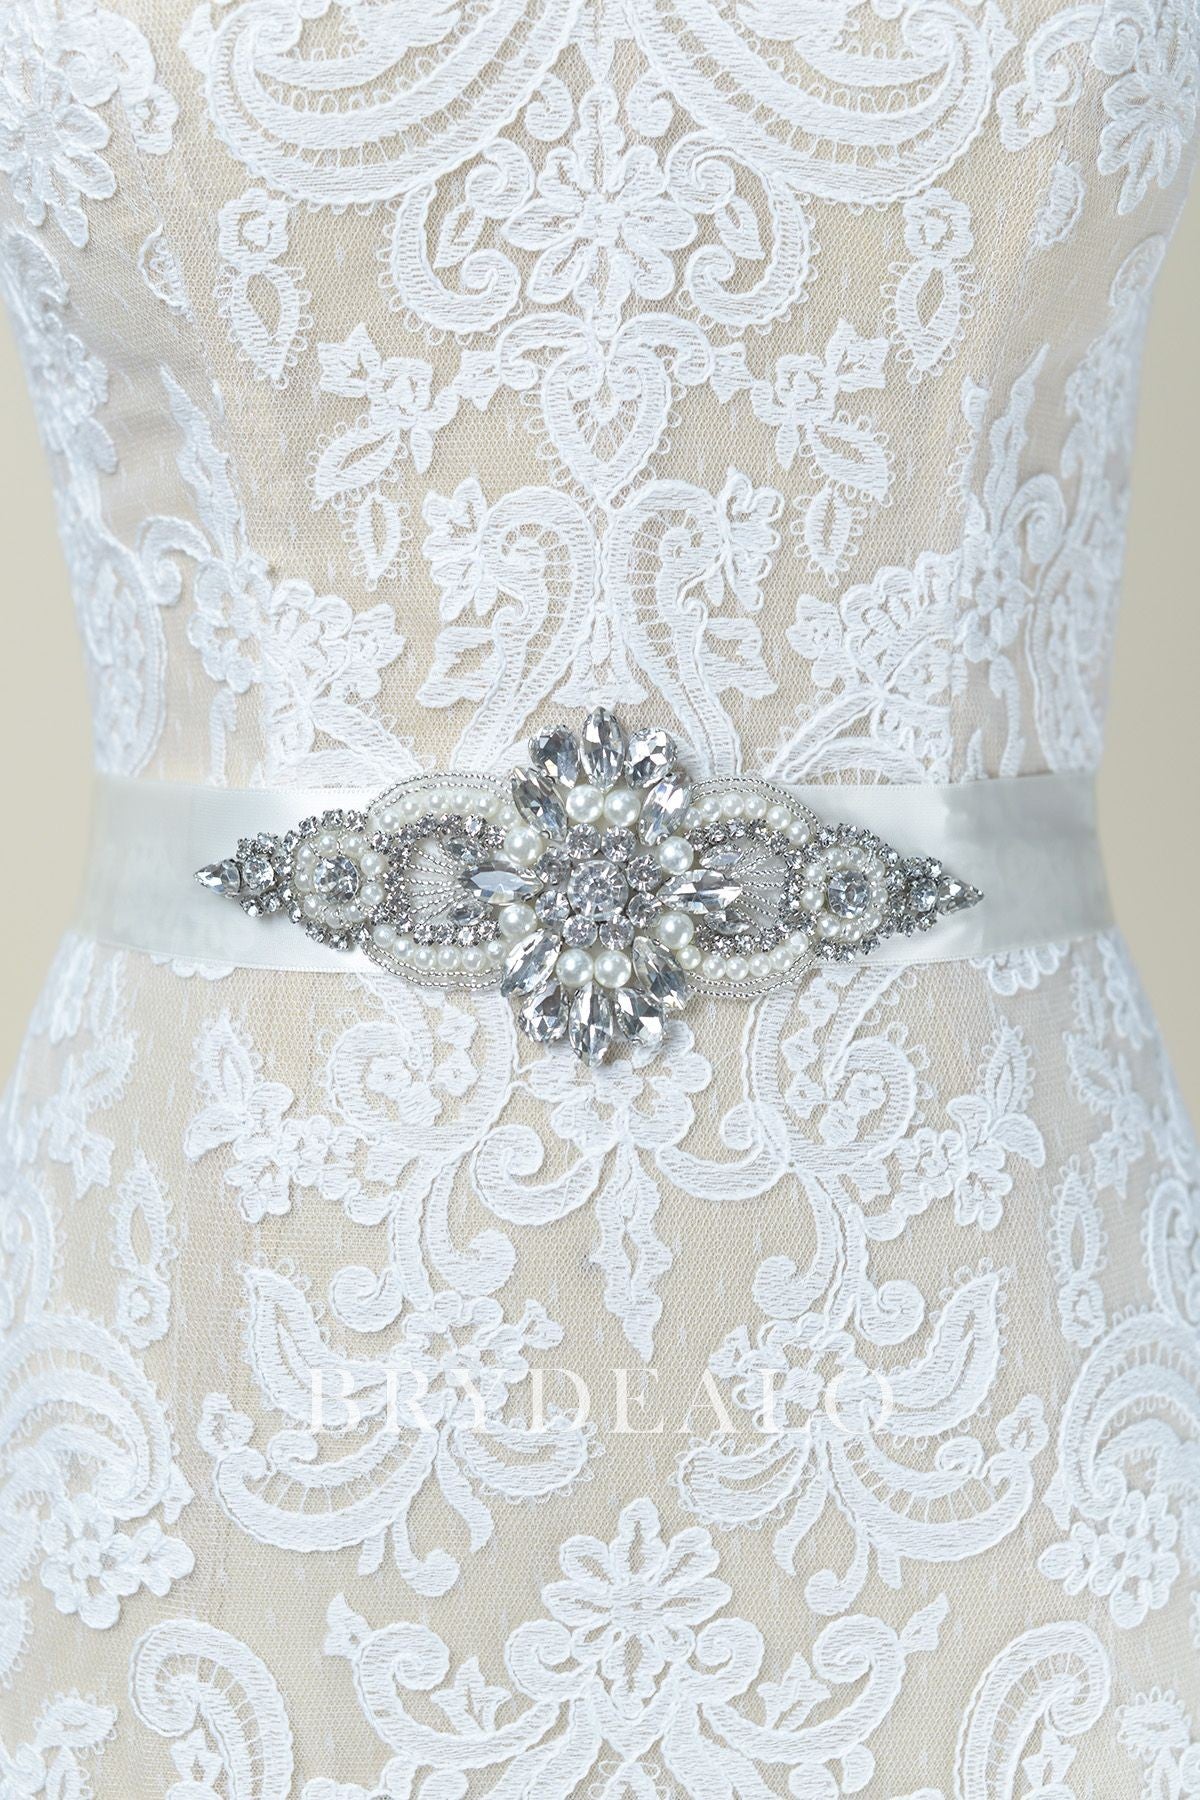 Stylish Rhinestones Pearls Satin Bridal Wedding Sash